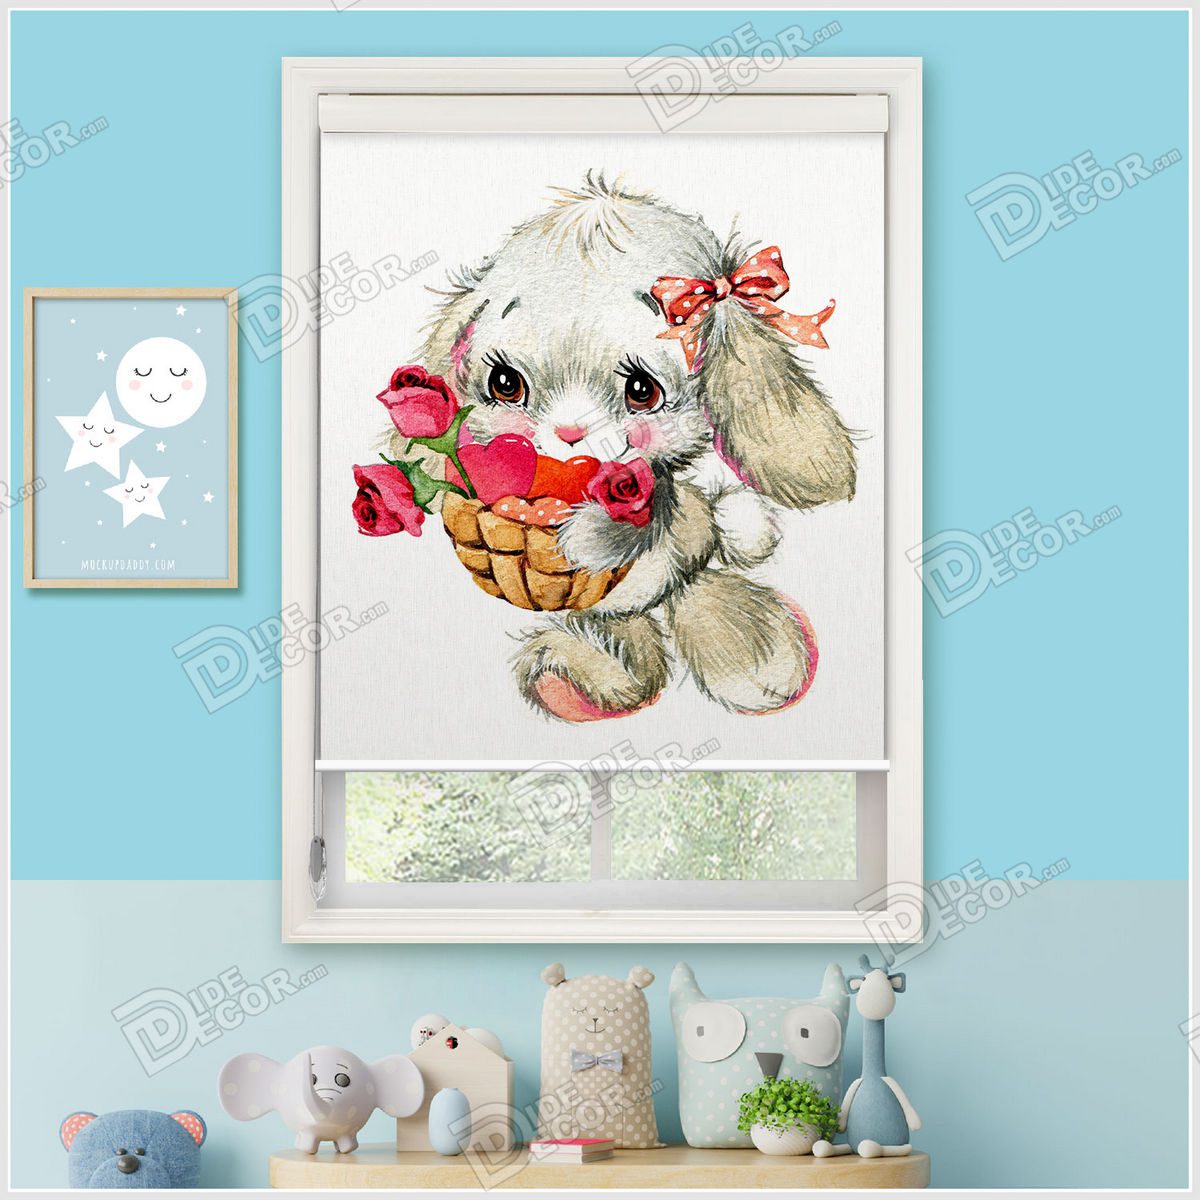 کد SKP-33 با طرحی از بچه خرگوش نژاد لوپ به رنگ طوسی که یک سبد حصیری با گل رز و قلب در دست دارد می باشد